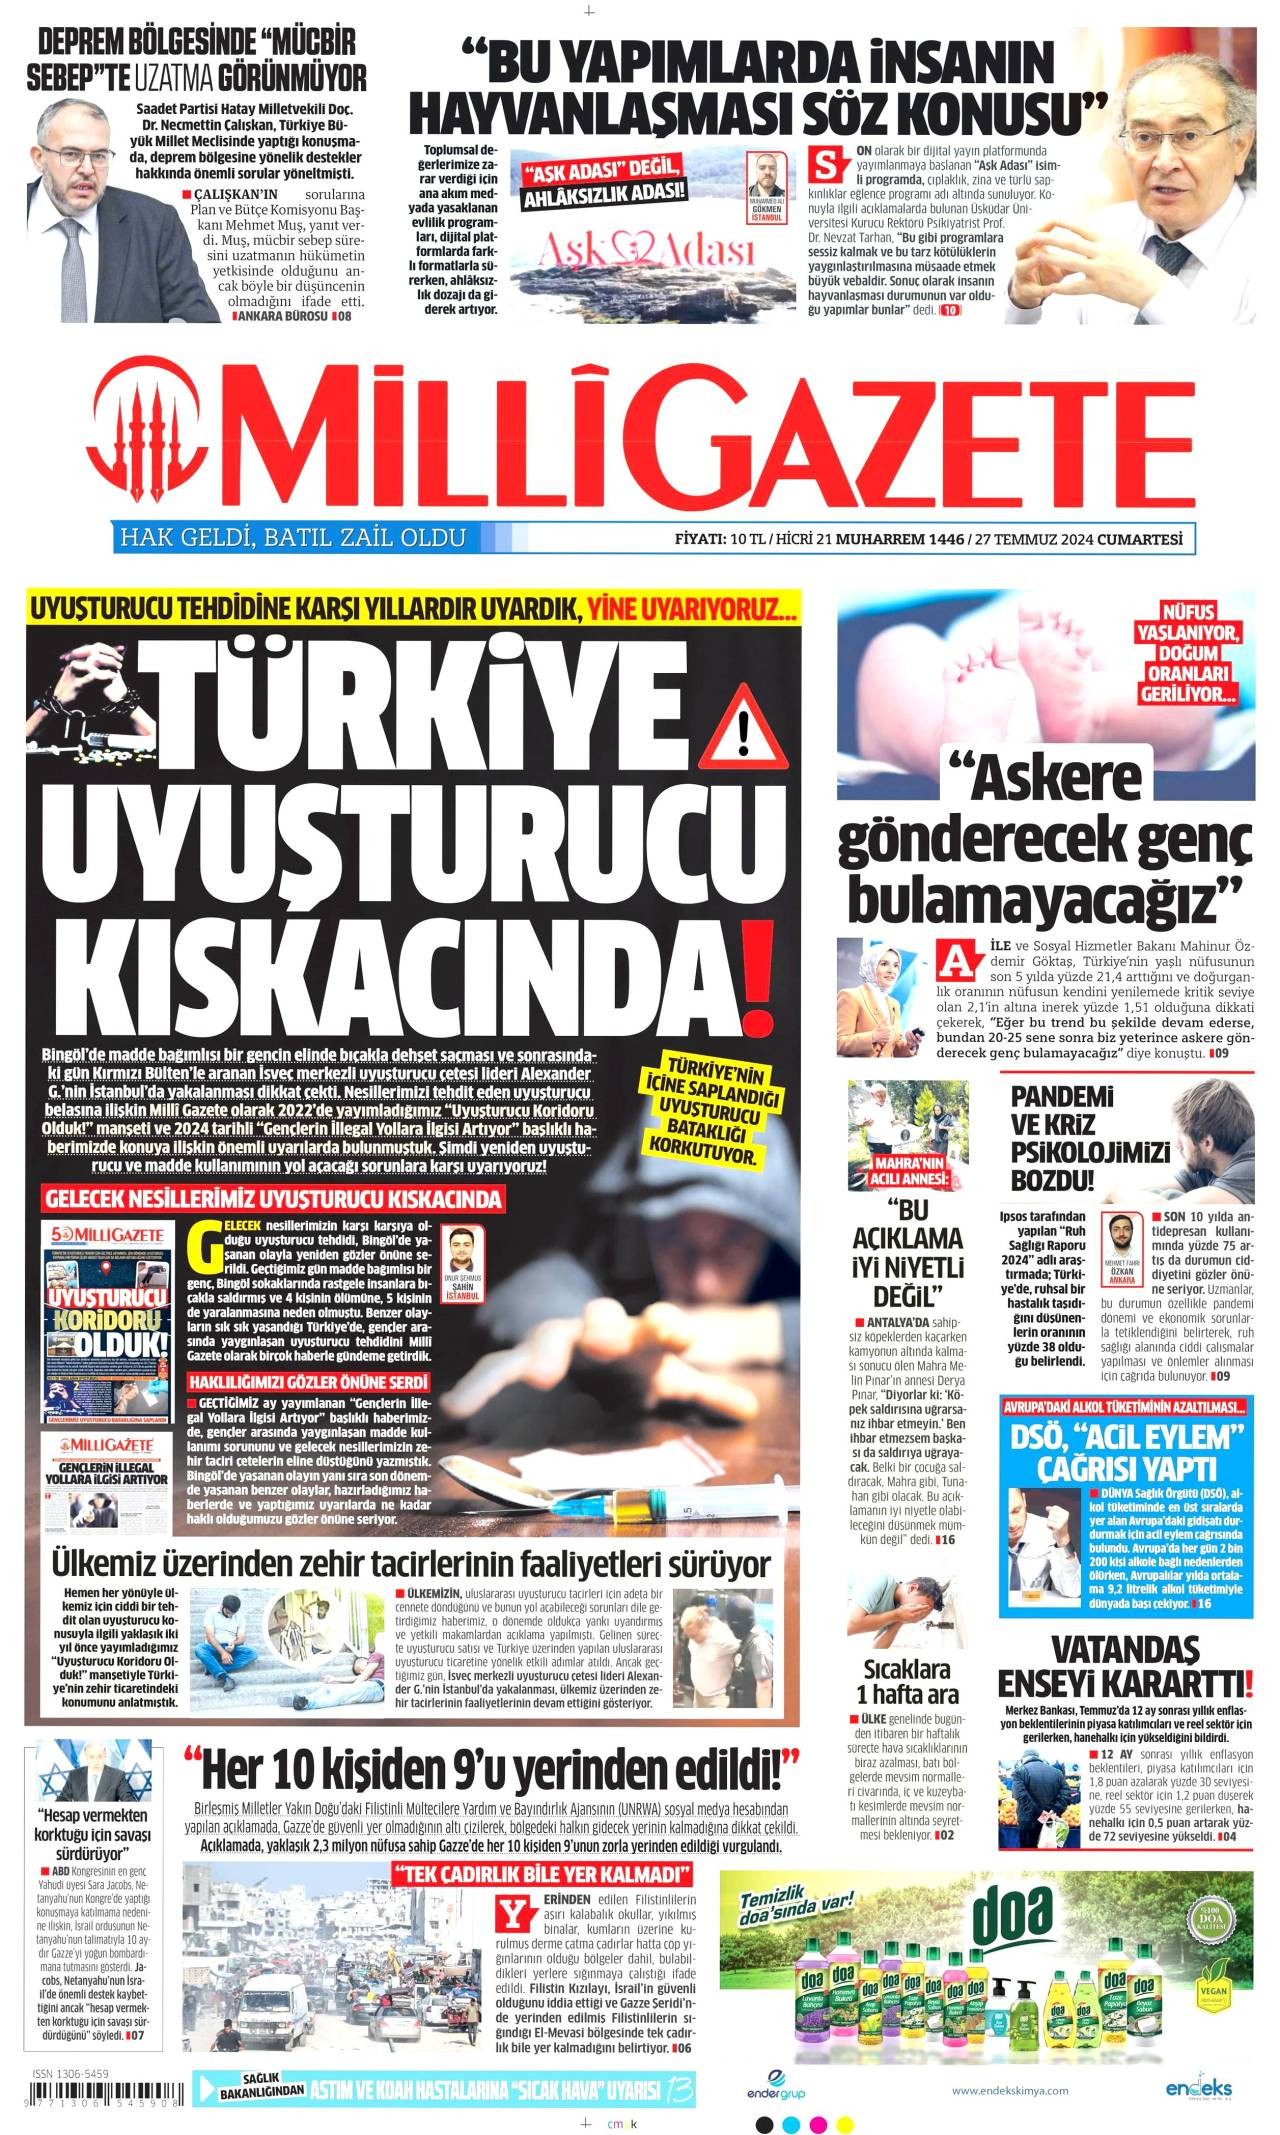 Milli Gazete gazetesi oku